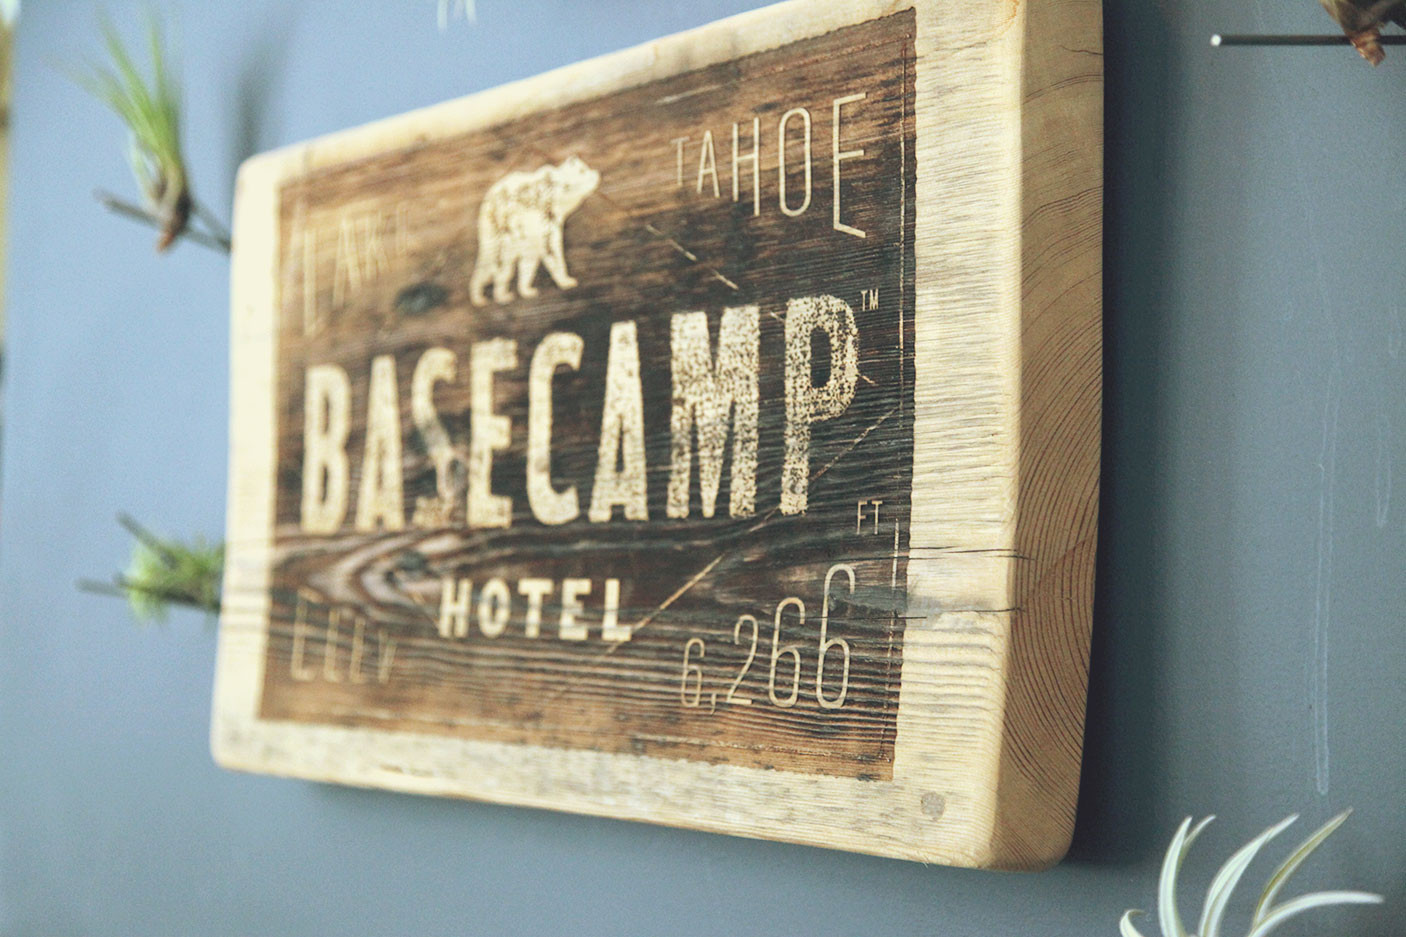 Basecamp Hotel